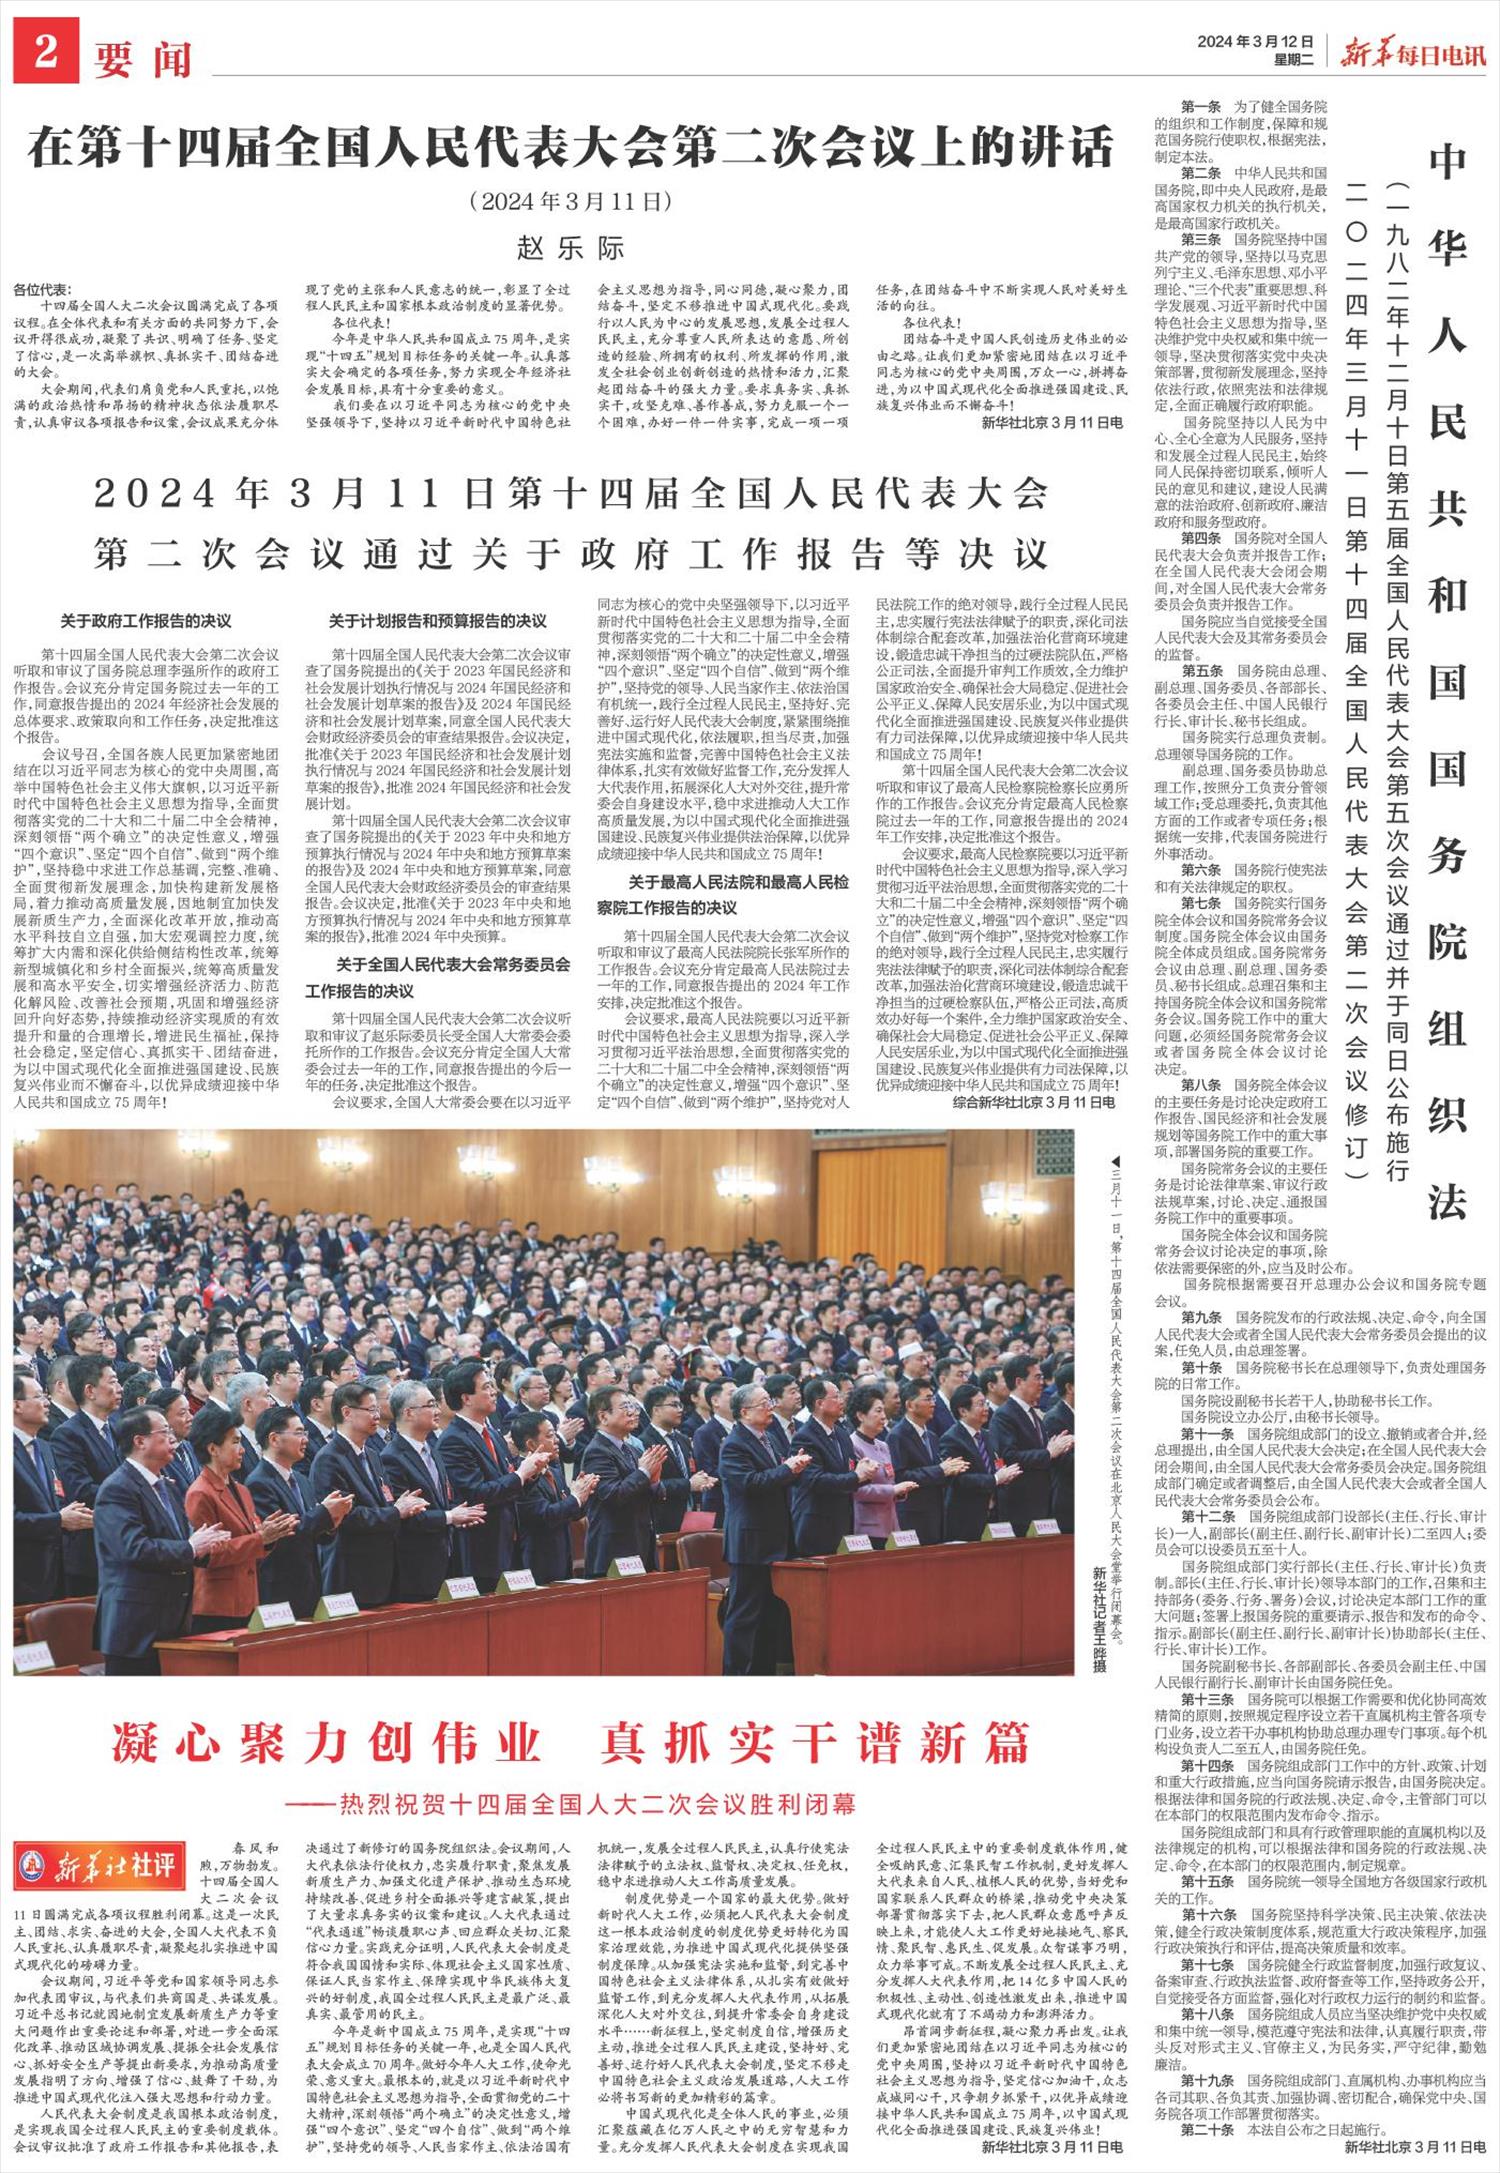 新华每日电讯-微报纸-2024年03月12日